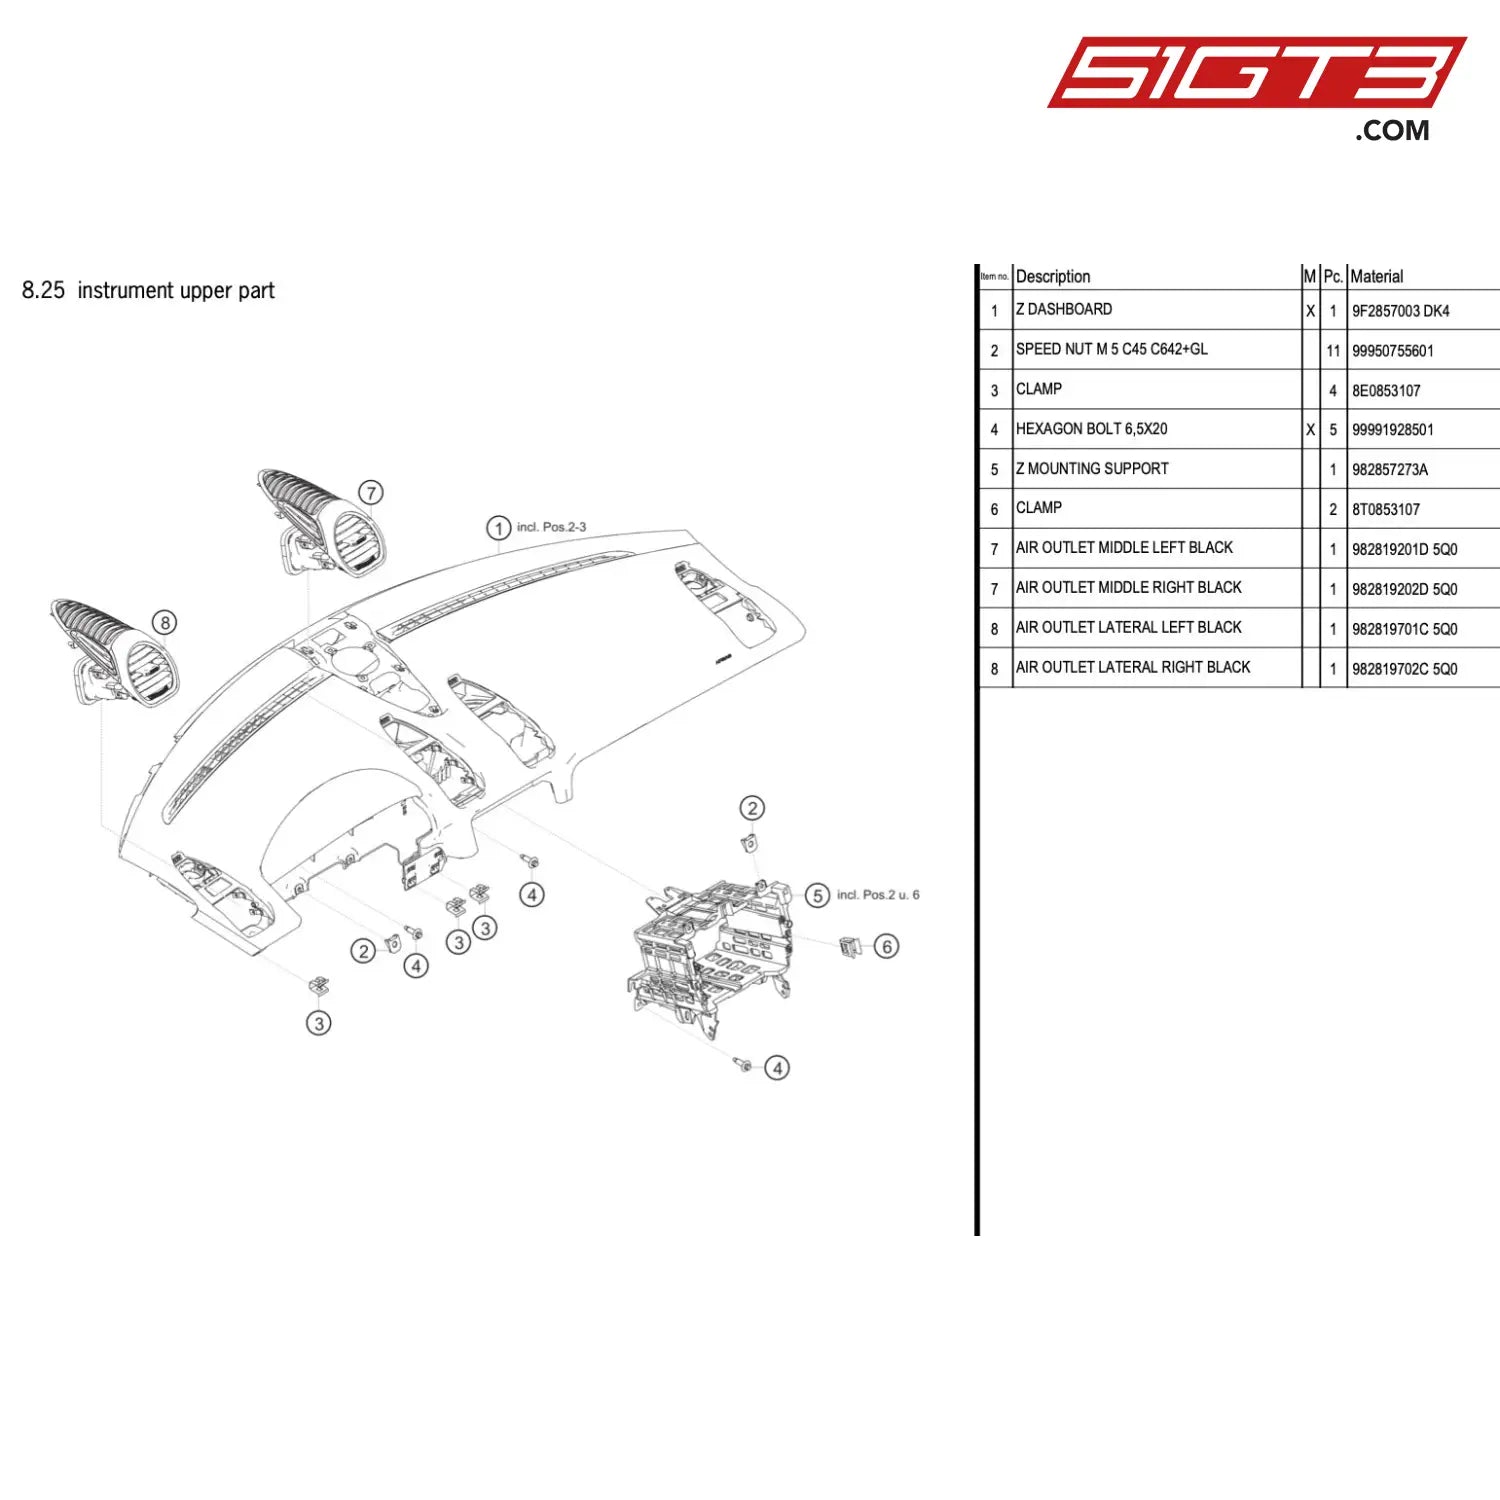 Z Mounting Support - 982857273A [Porsche 718 Cayman Gt4 Rs Clubsport] Instrument Upper Part